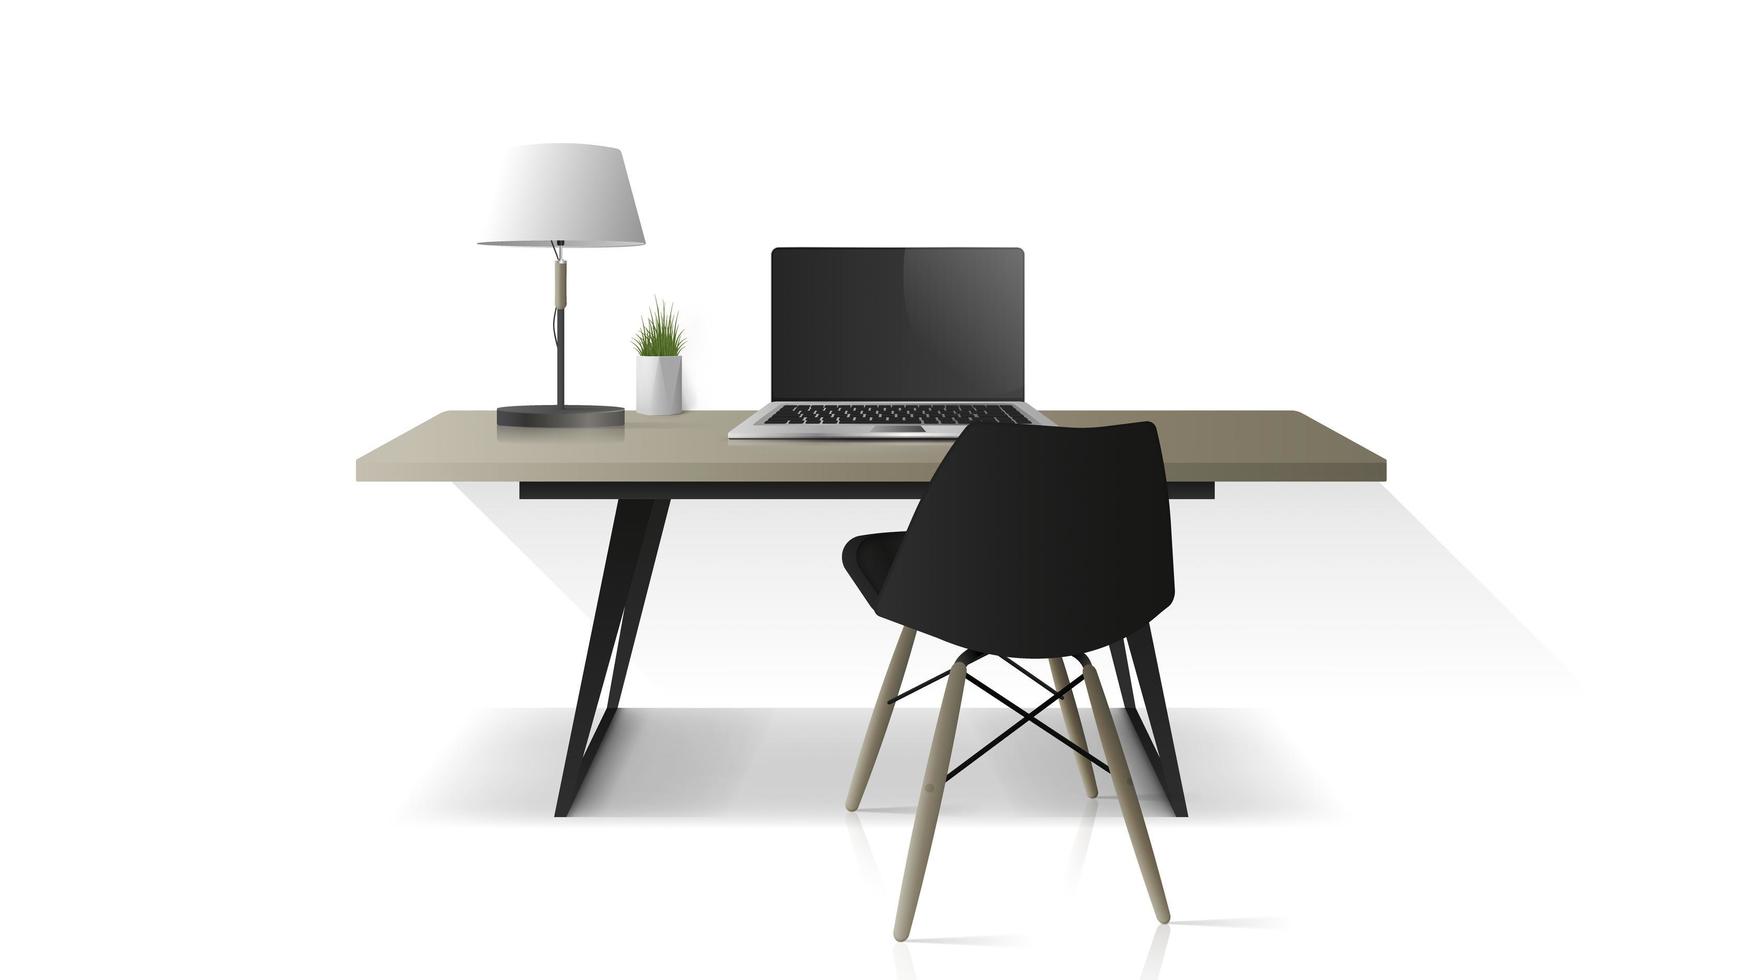 lugar de trabajo moderno aislado en un fondo blanco. mesa de oficina de madera, portátil, sillón, lámpara de mesa. elemento para el diseño de oficinas. vector realista.